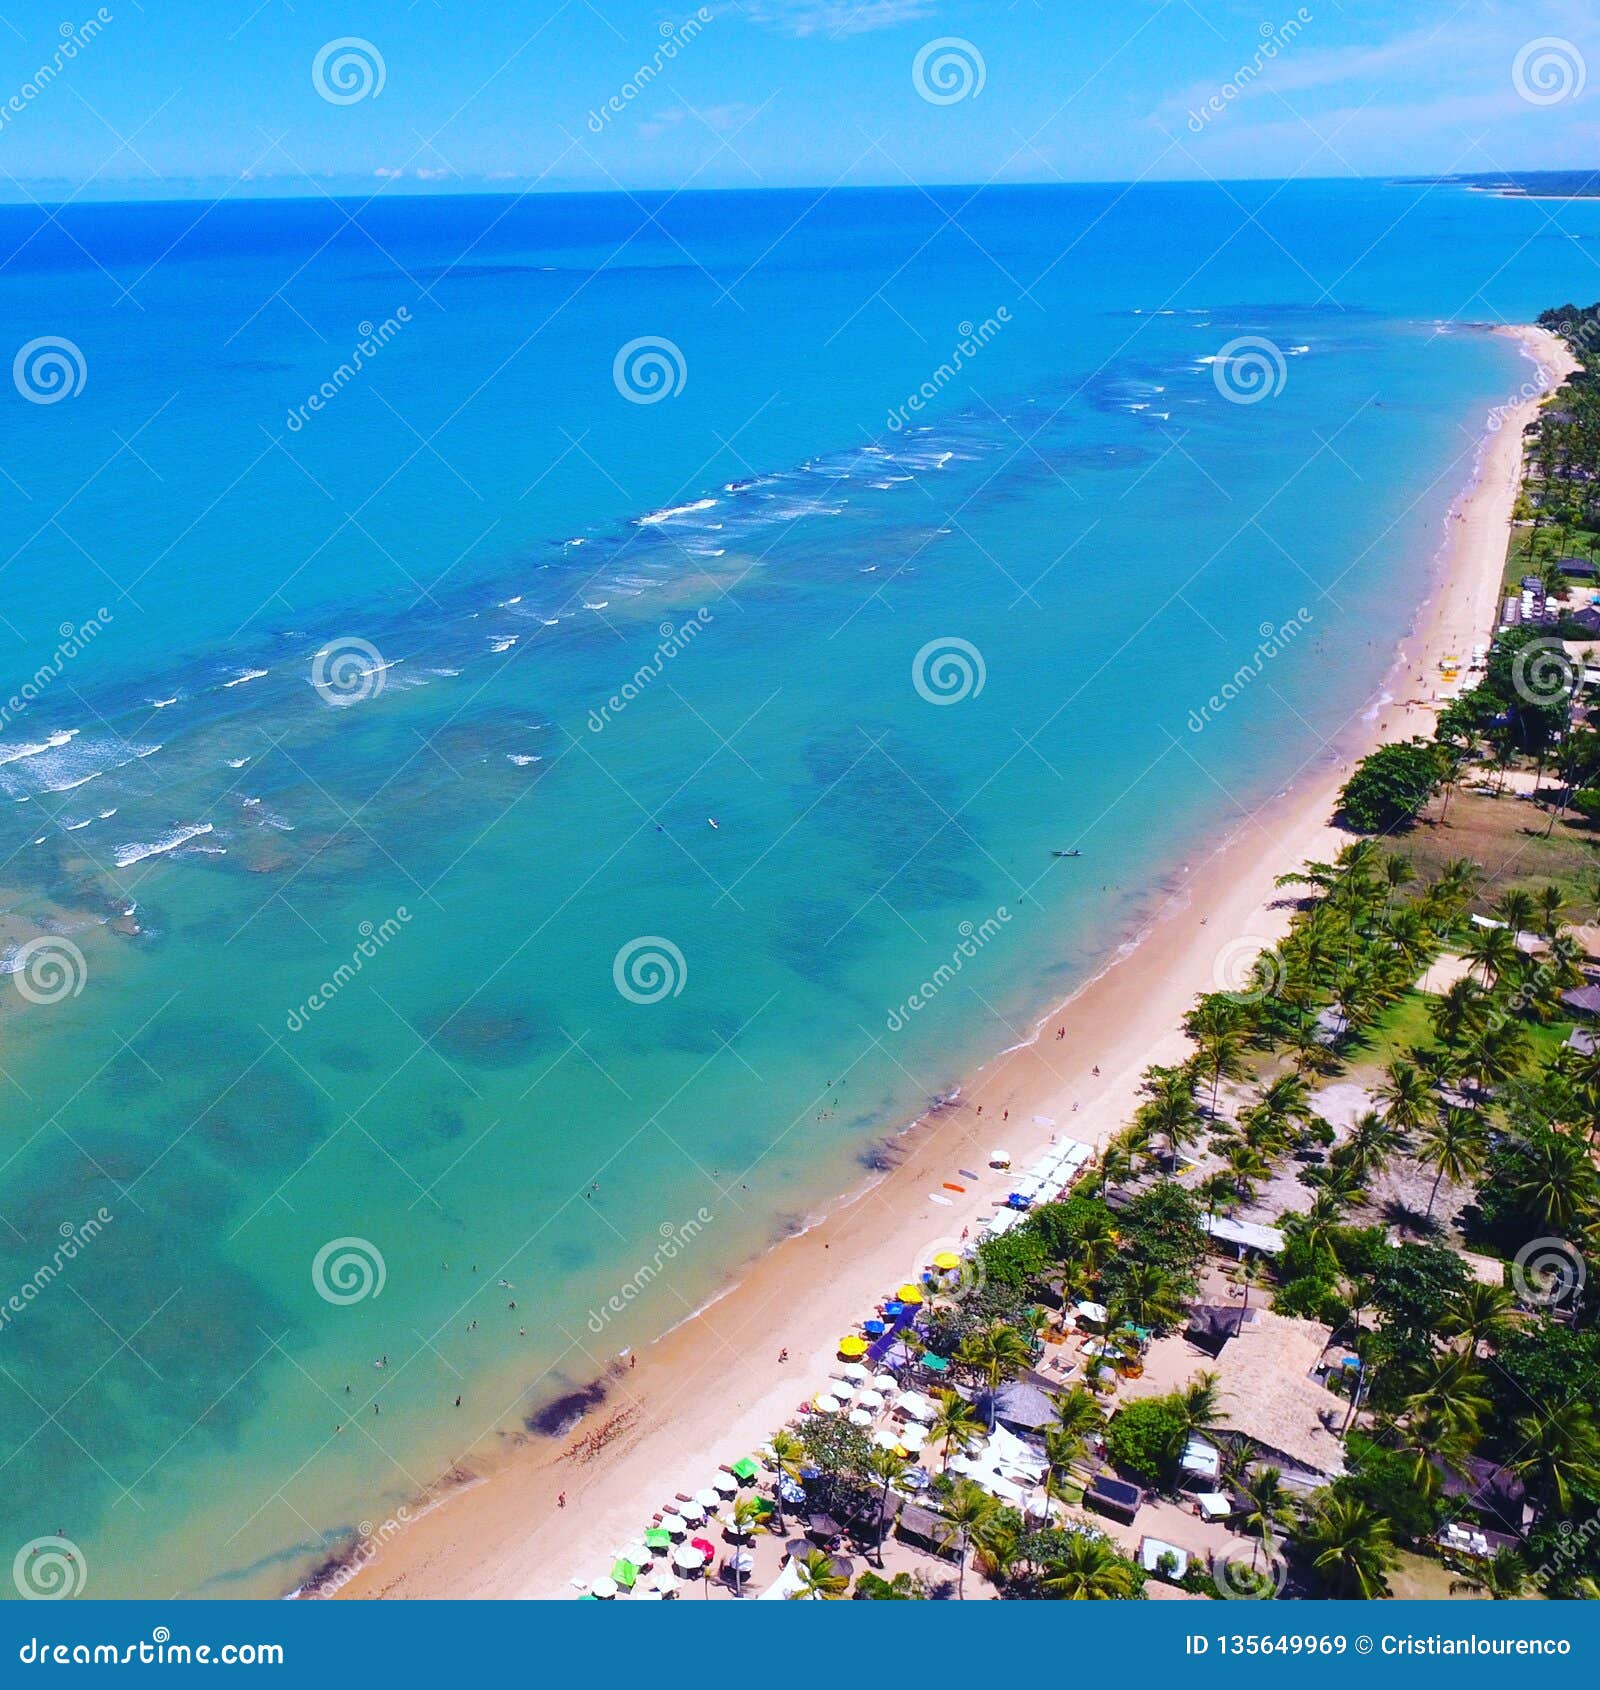 aerial view of arraial d`ajuda beach, porto seguro, bahia, brazil